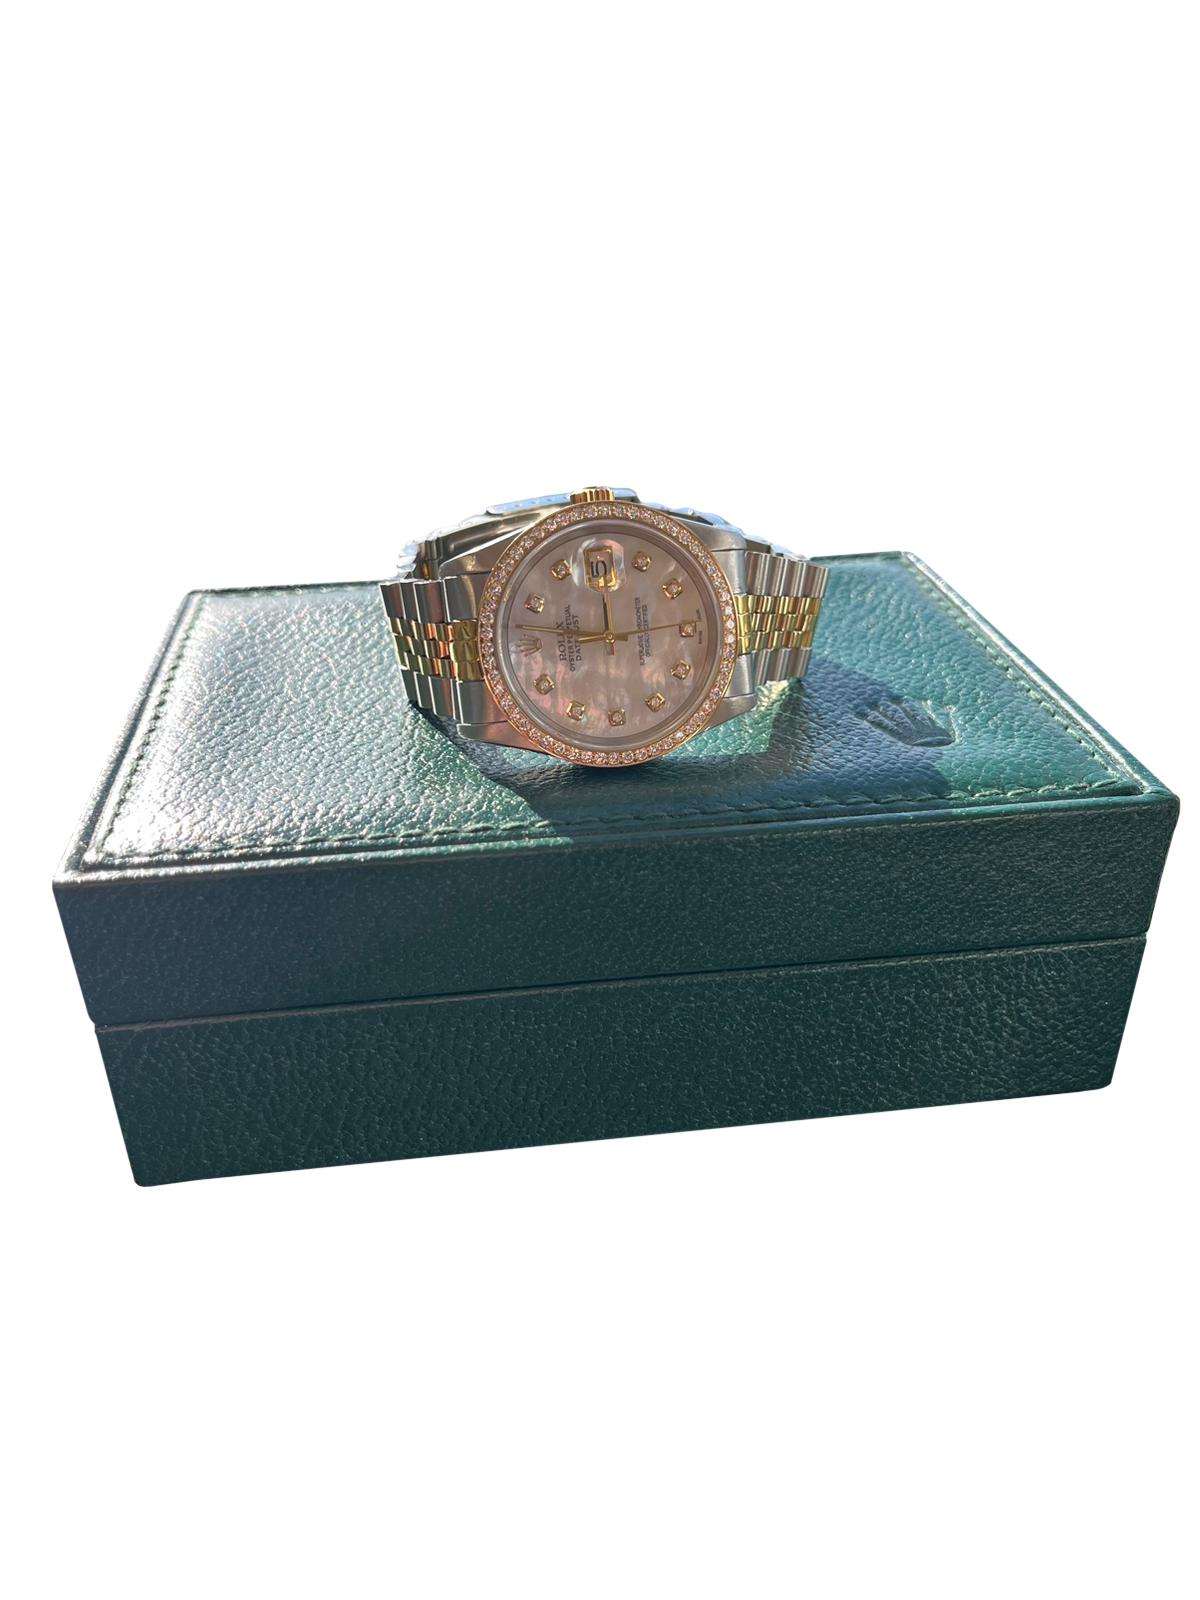 Rolex Datejust 36mm MOP Diamond Dial Diamond Bezel Jubilee Bracelet Watch 16233 For Sale 13